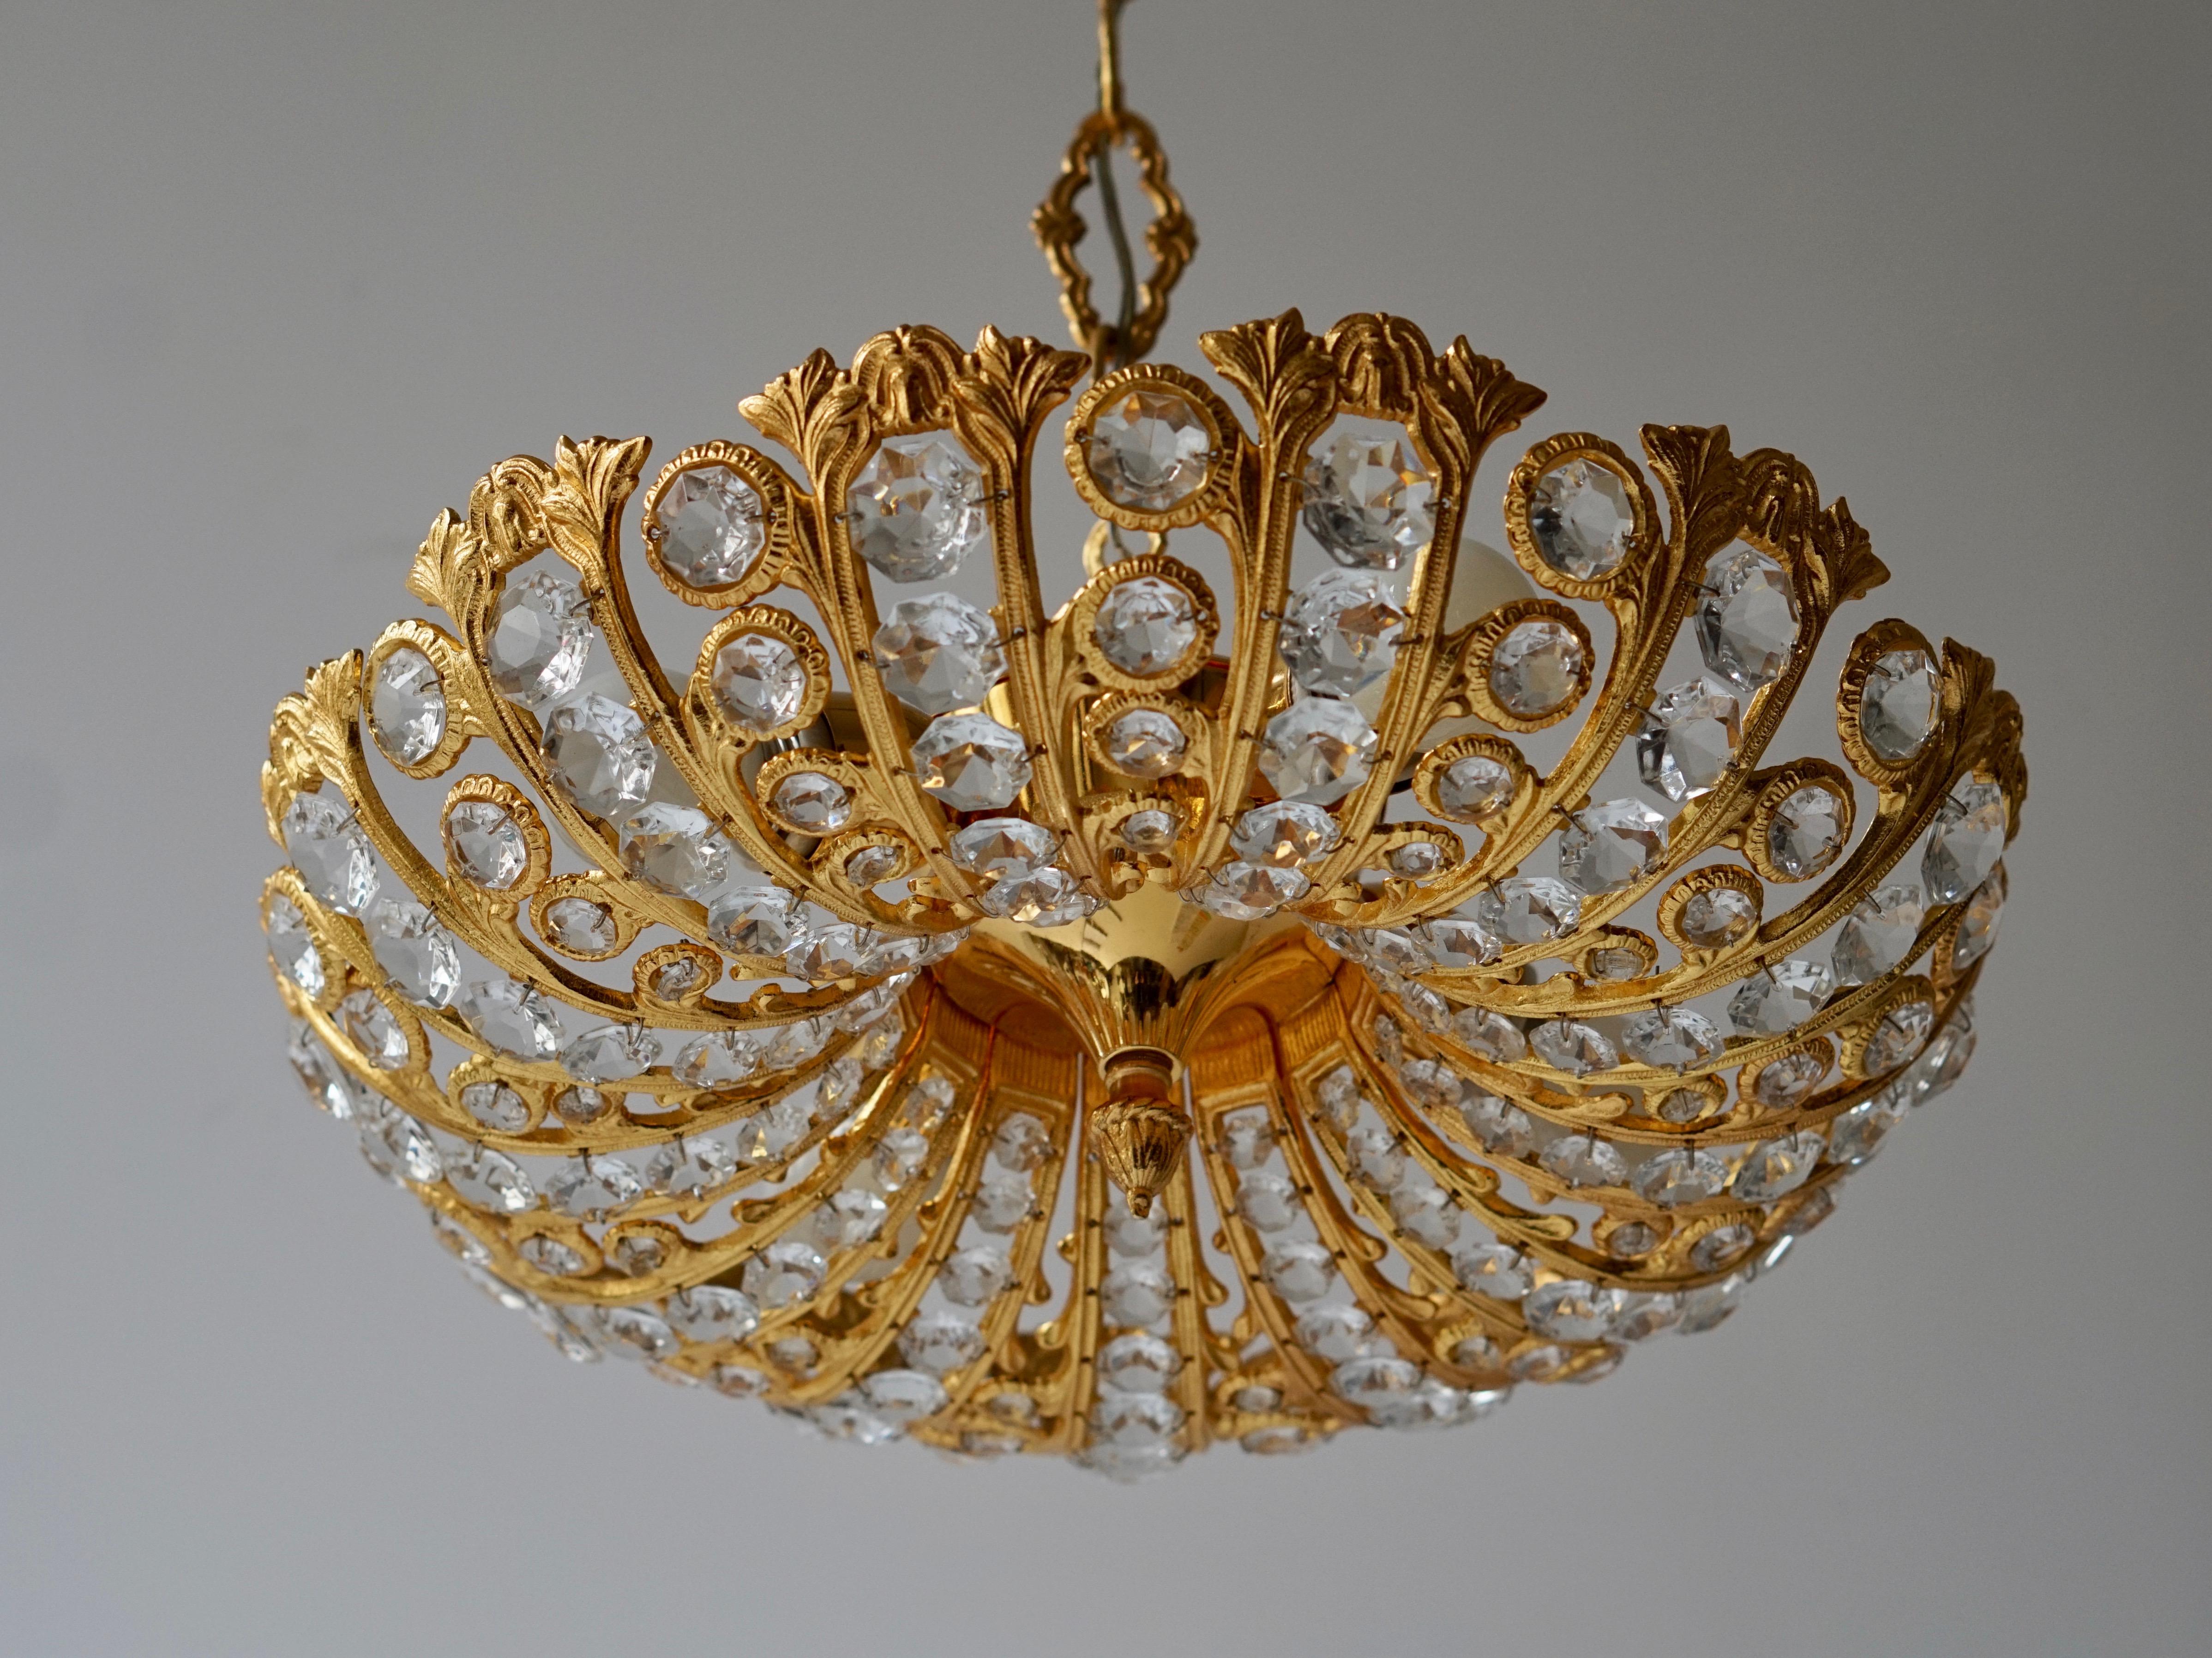 Seltene und großartige Palwa-Lampe, entworfen von Ernest Palm und hergestellt in den 60er Jahren in Barcelona. 
Goldene Struktur, bestehend aus geschliffenen Kristallen in perfektem Erhaltungszustand. Ein seltenes Designobjekt, das Ihr Interieur